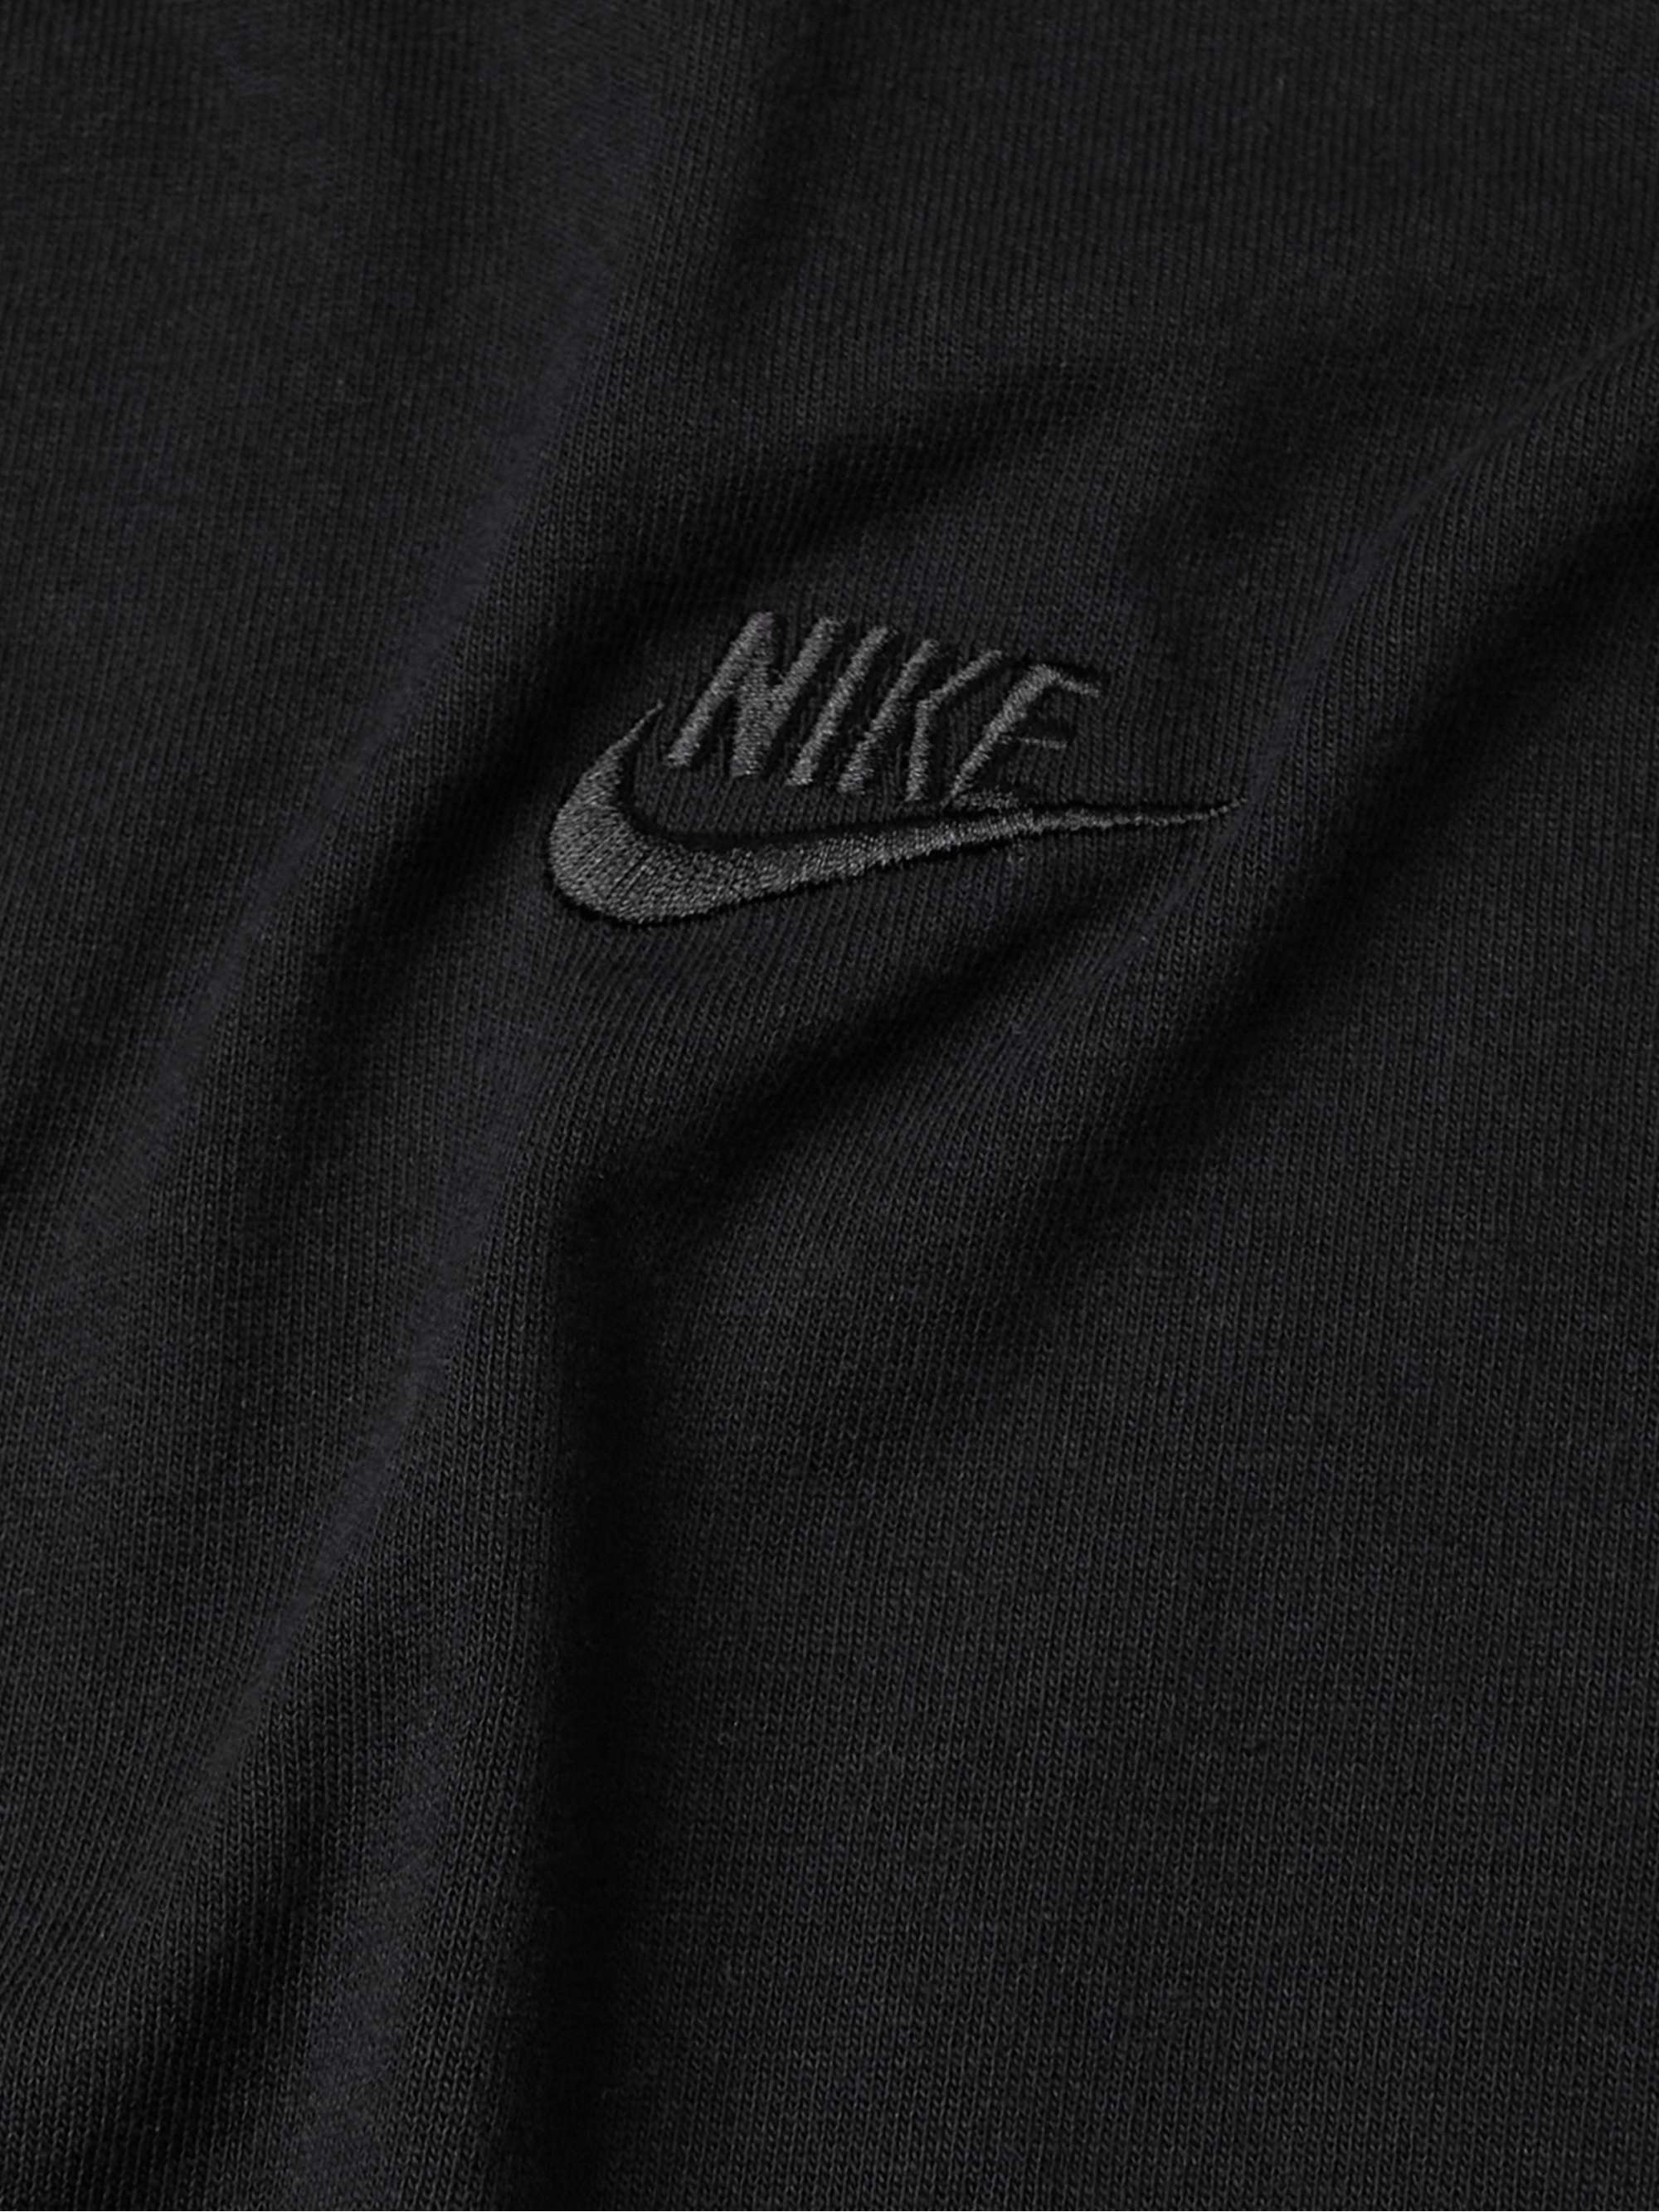 NIKE Sportswear Premium Essentials Logo-Embroidered Cotton-Jersey T-Shirt